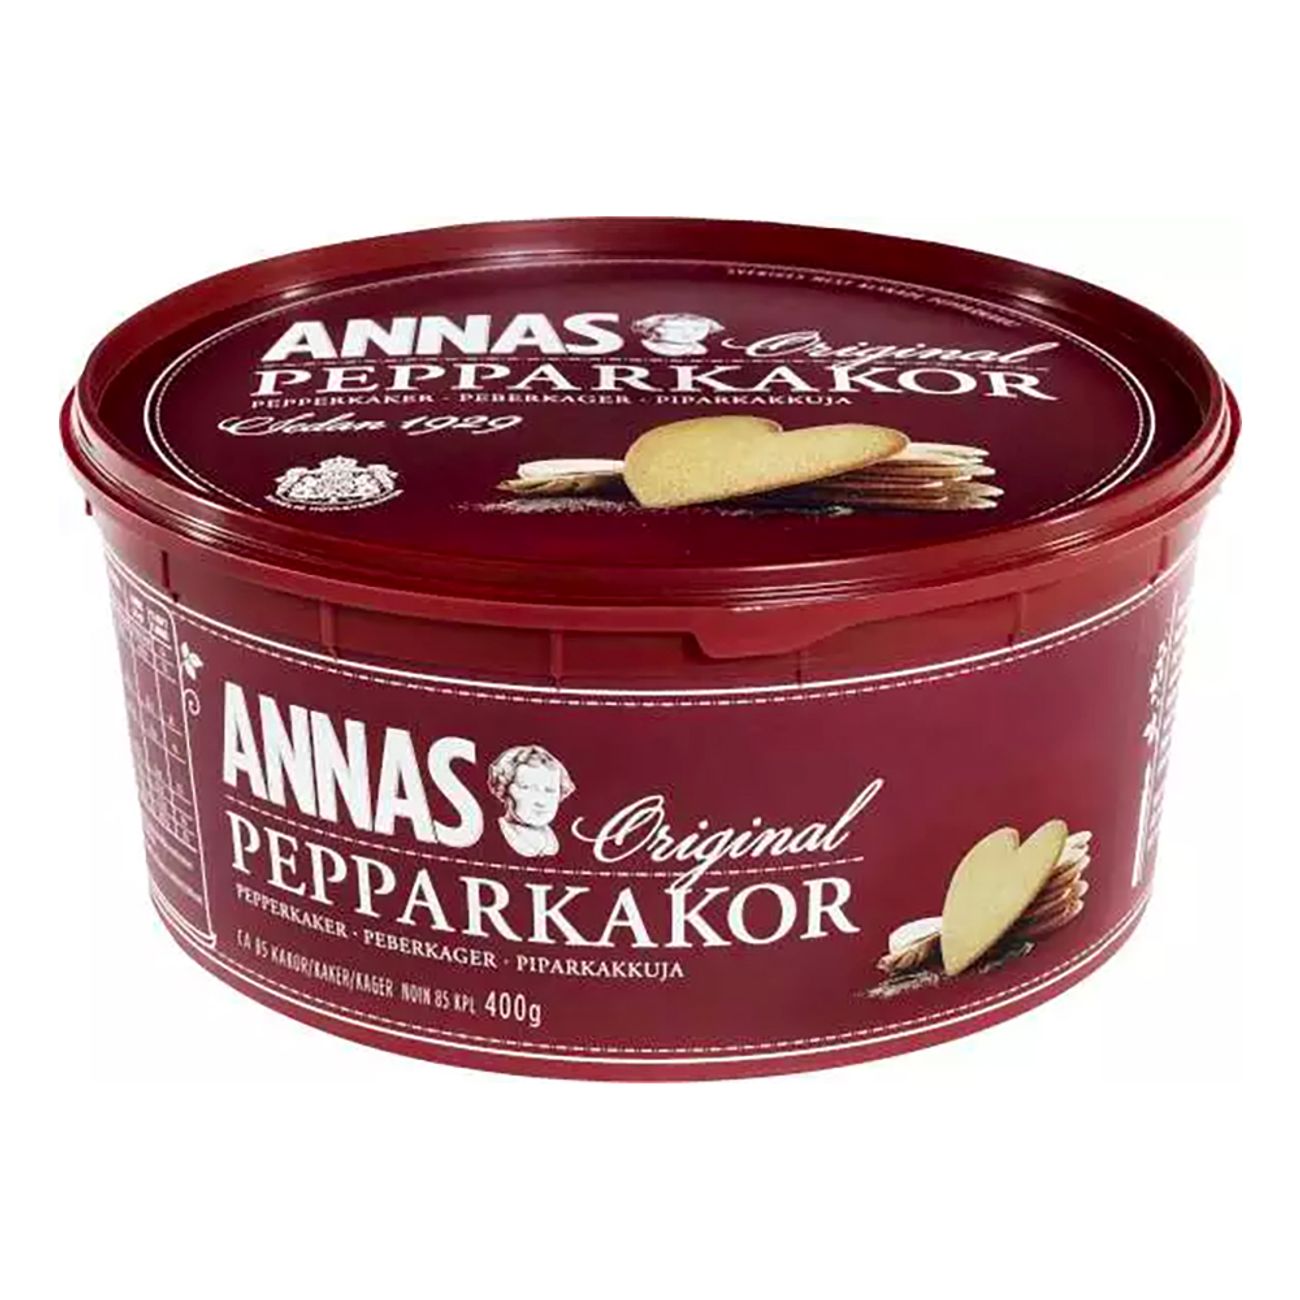 annas-pepparkakor-original-hjartformade-89970-1